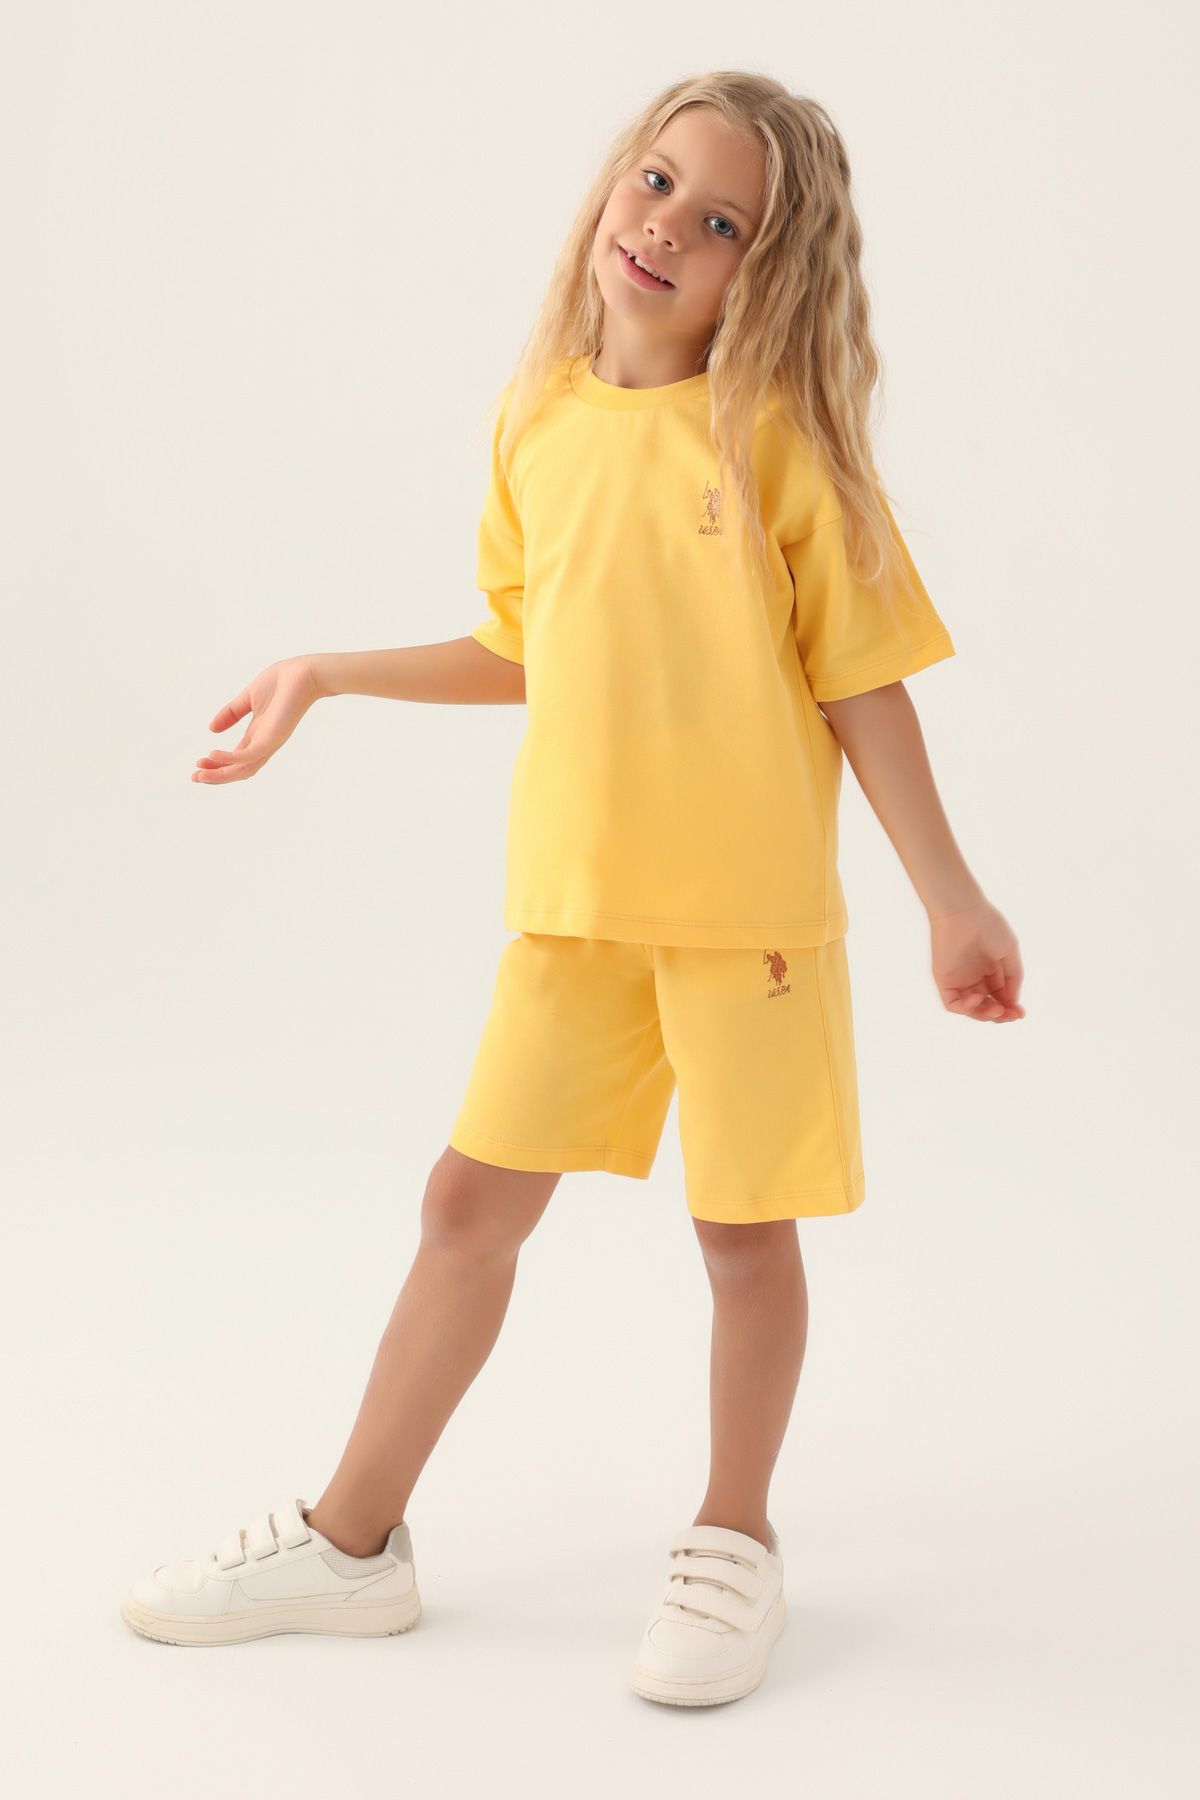 Костюм повседневный детский U.S. POLO Assn. US1822-V1, желтый, 110 костюм повседневный детский u s polo assn us1822 v1 розовая пудра 146